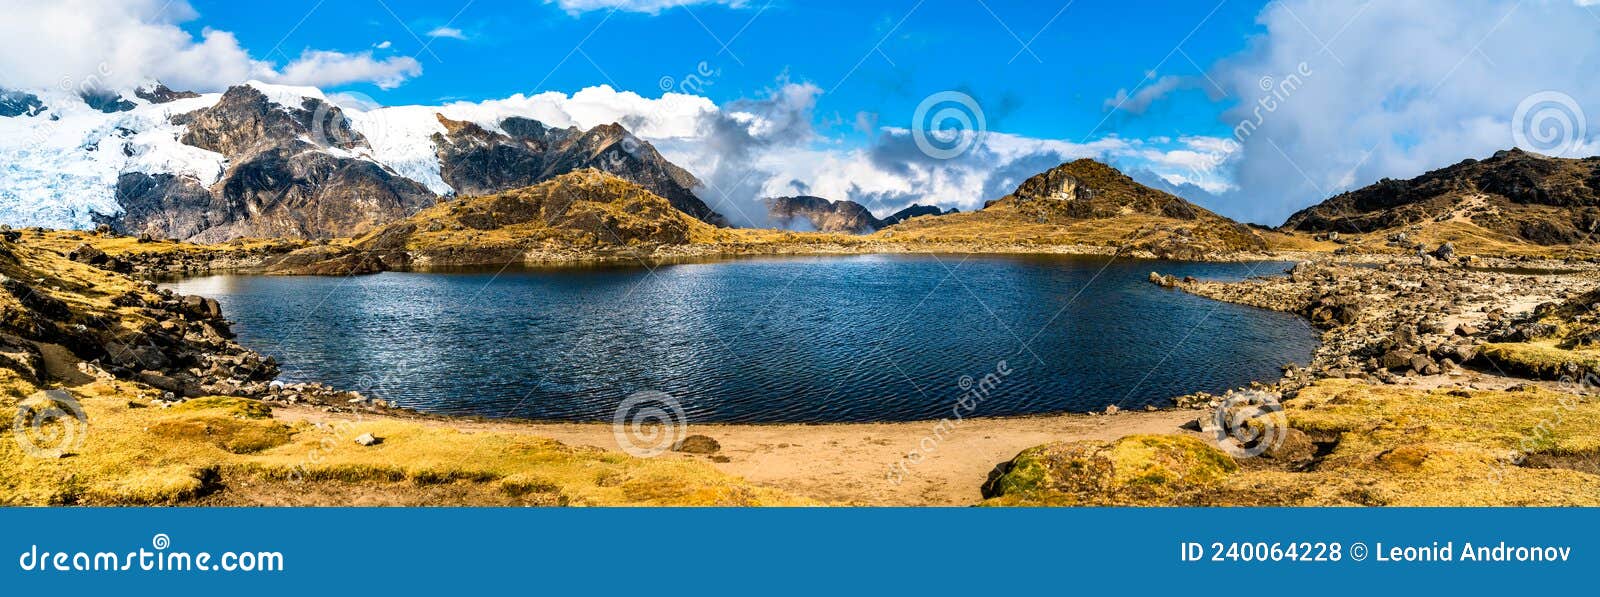 lake at the huaytapallana mountain range in huancayo, peru